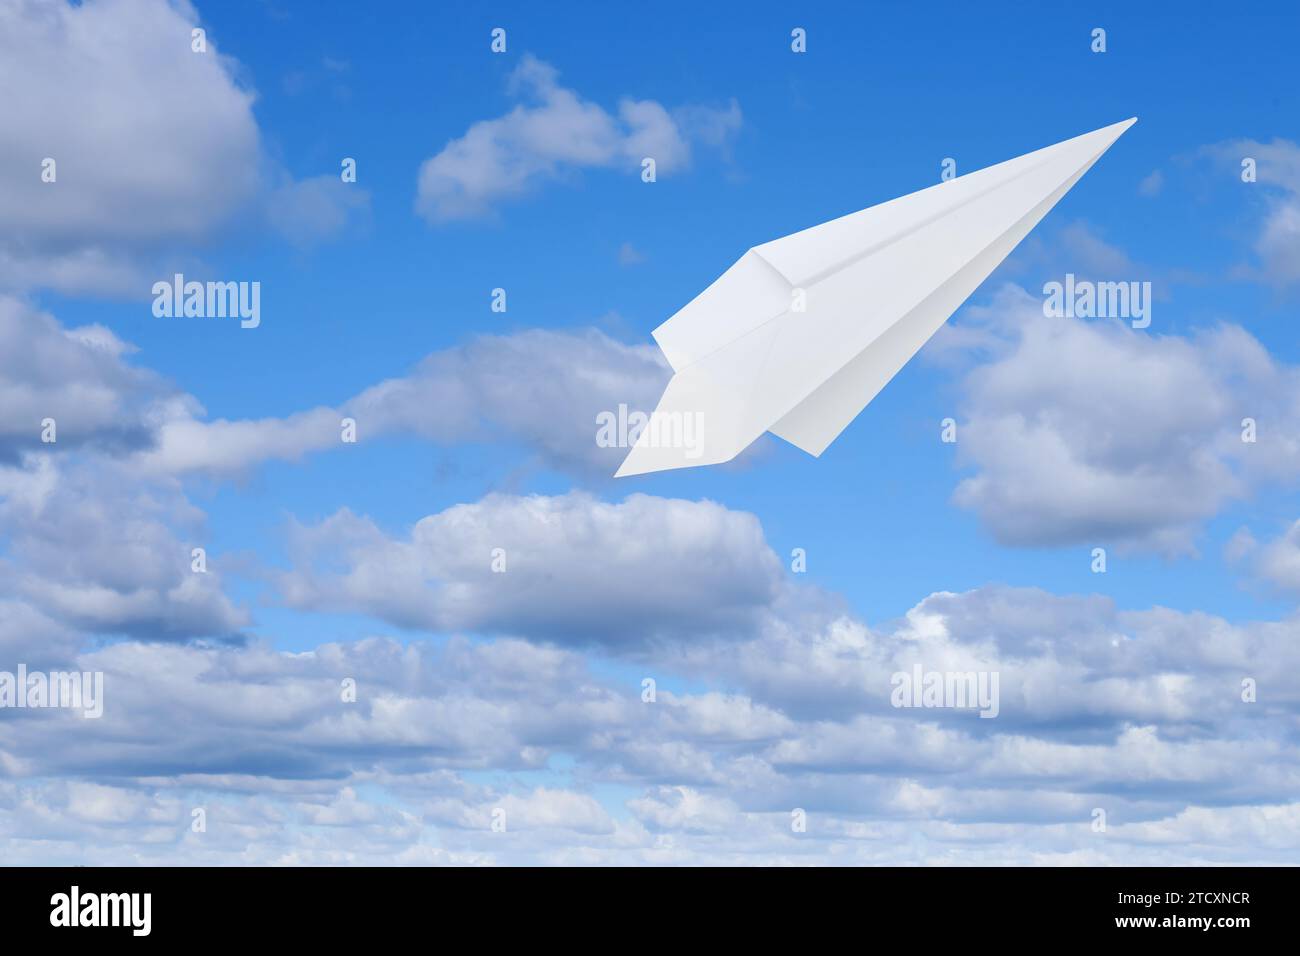 Avion en papier blanc volant dans le ciel bleu avec des nuages avec des nuages Banque D'Images